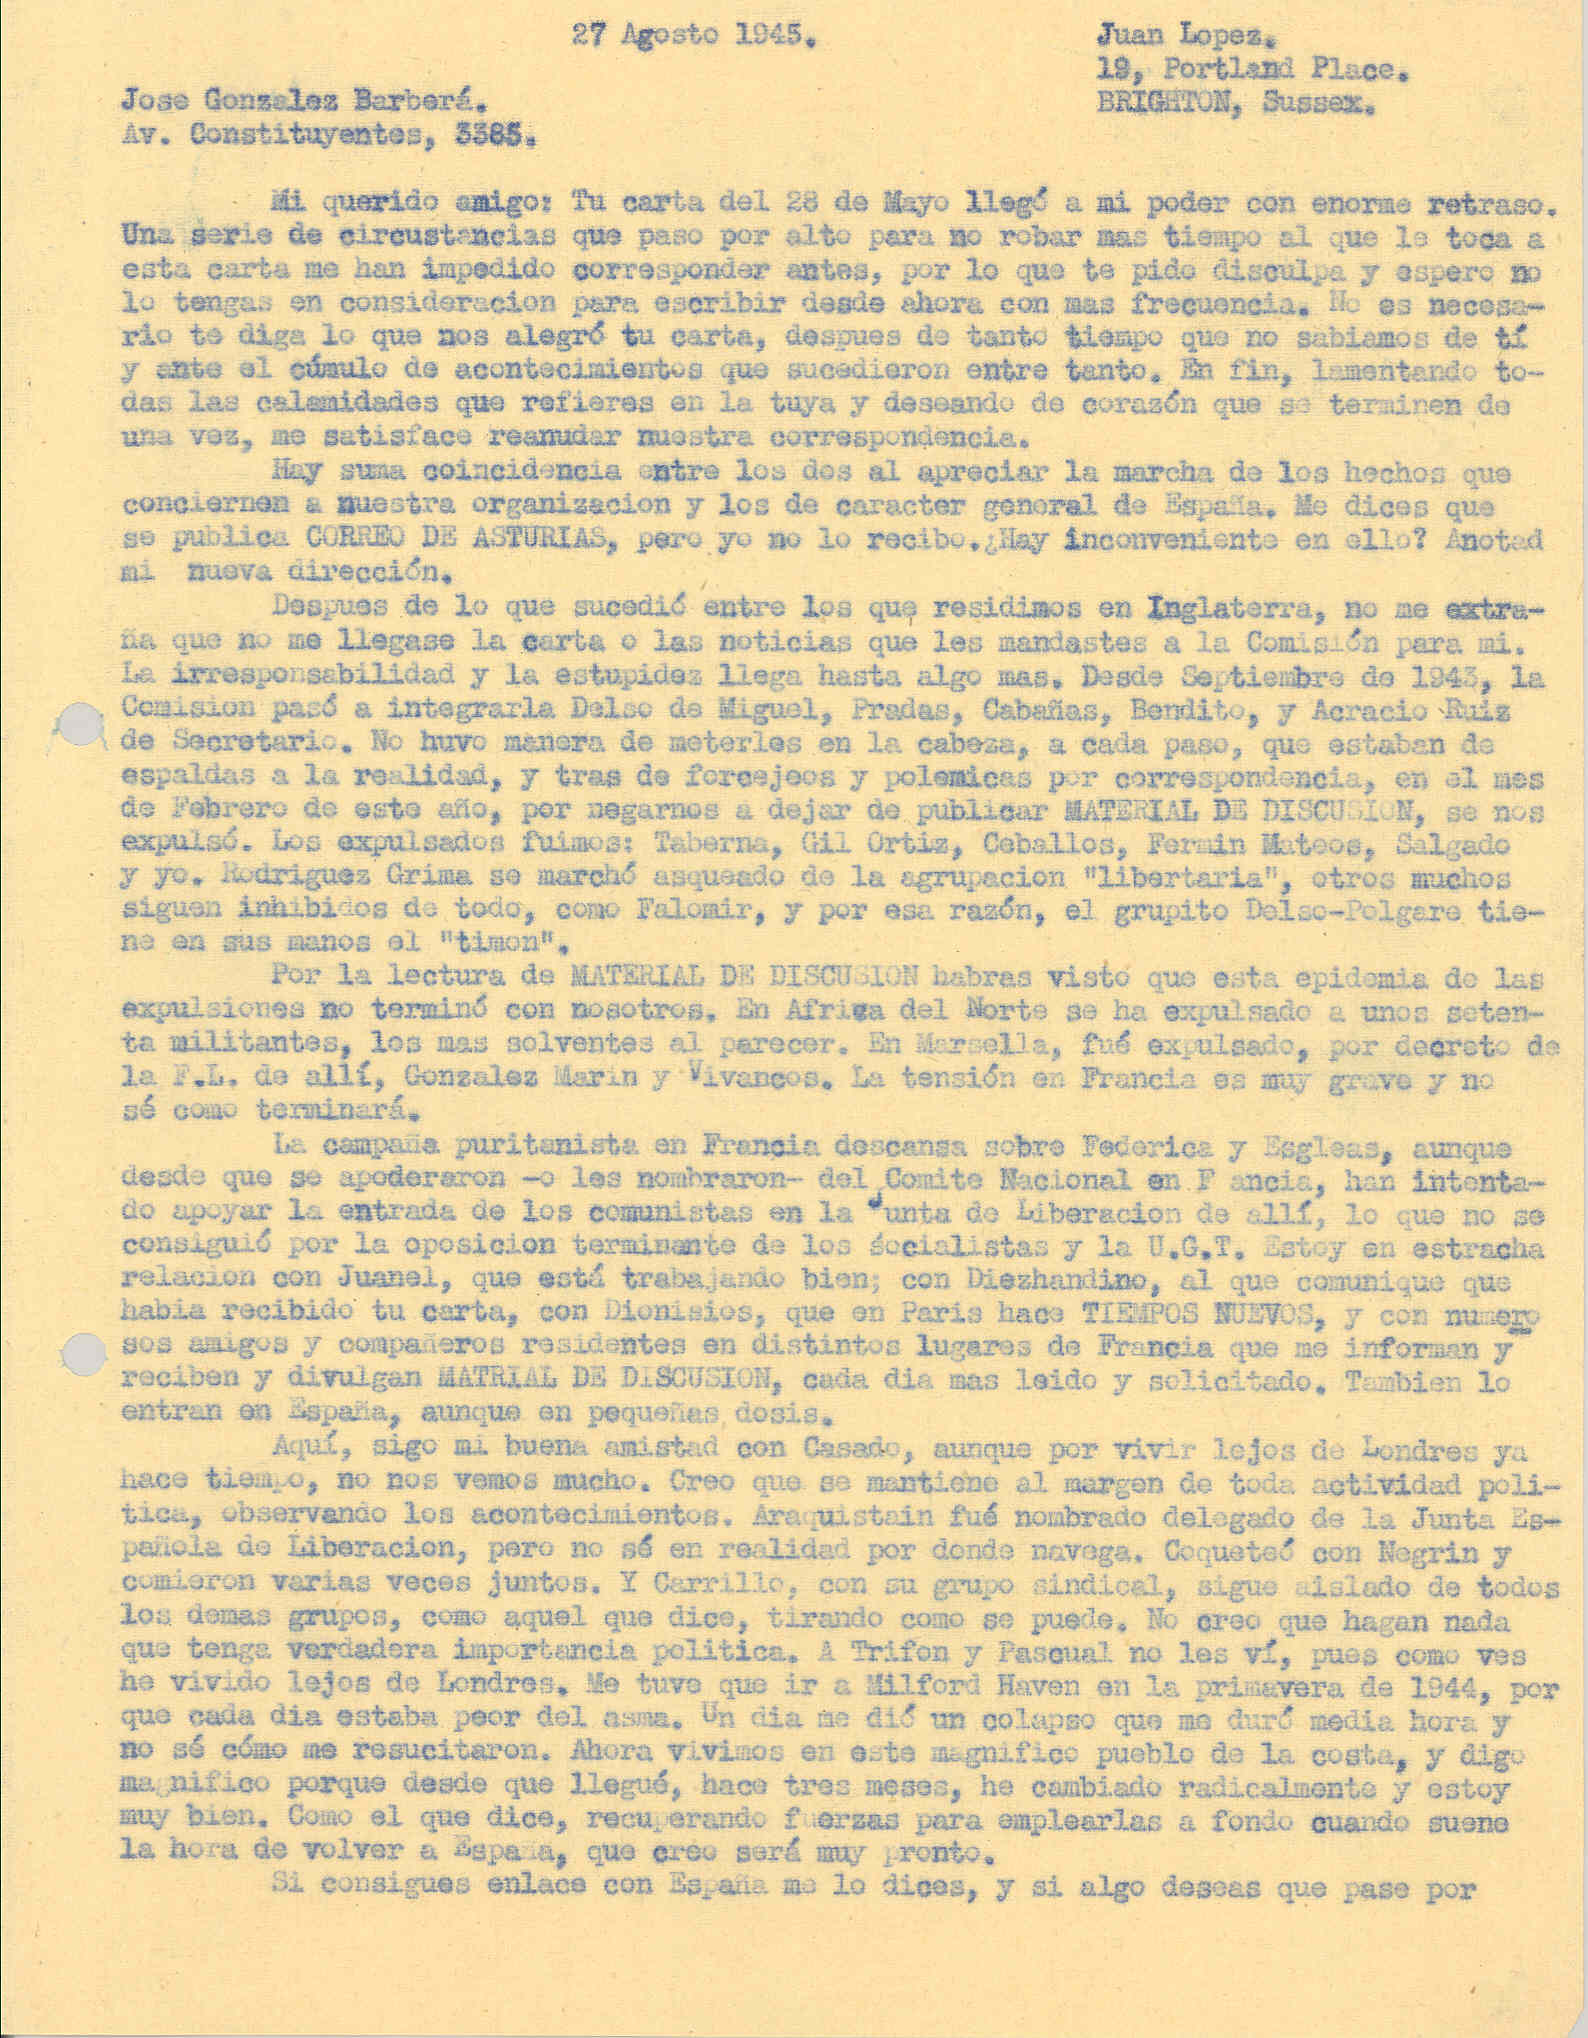 Carta a Barberá informando como él y otros compañeros que enumera fueron expulsados en febrero de 1943 del Movimiento Libertario en Inglaterra por publicar 